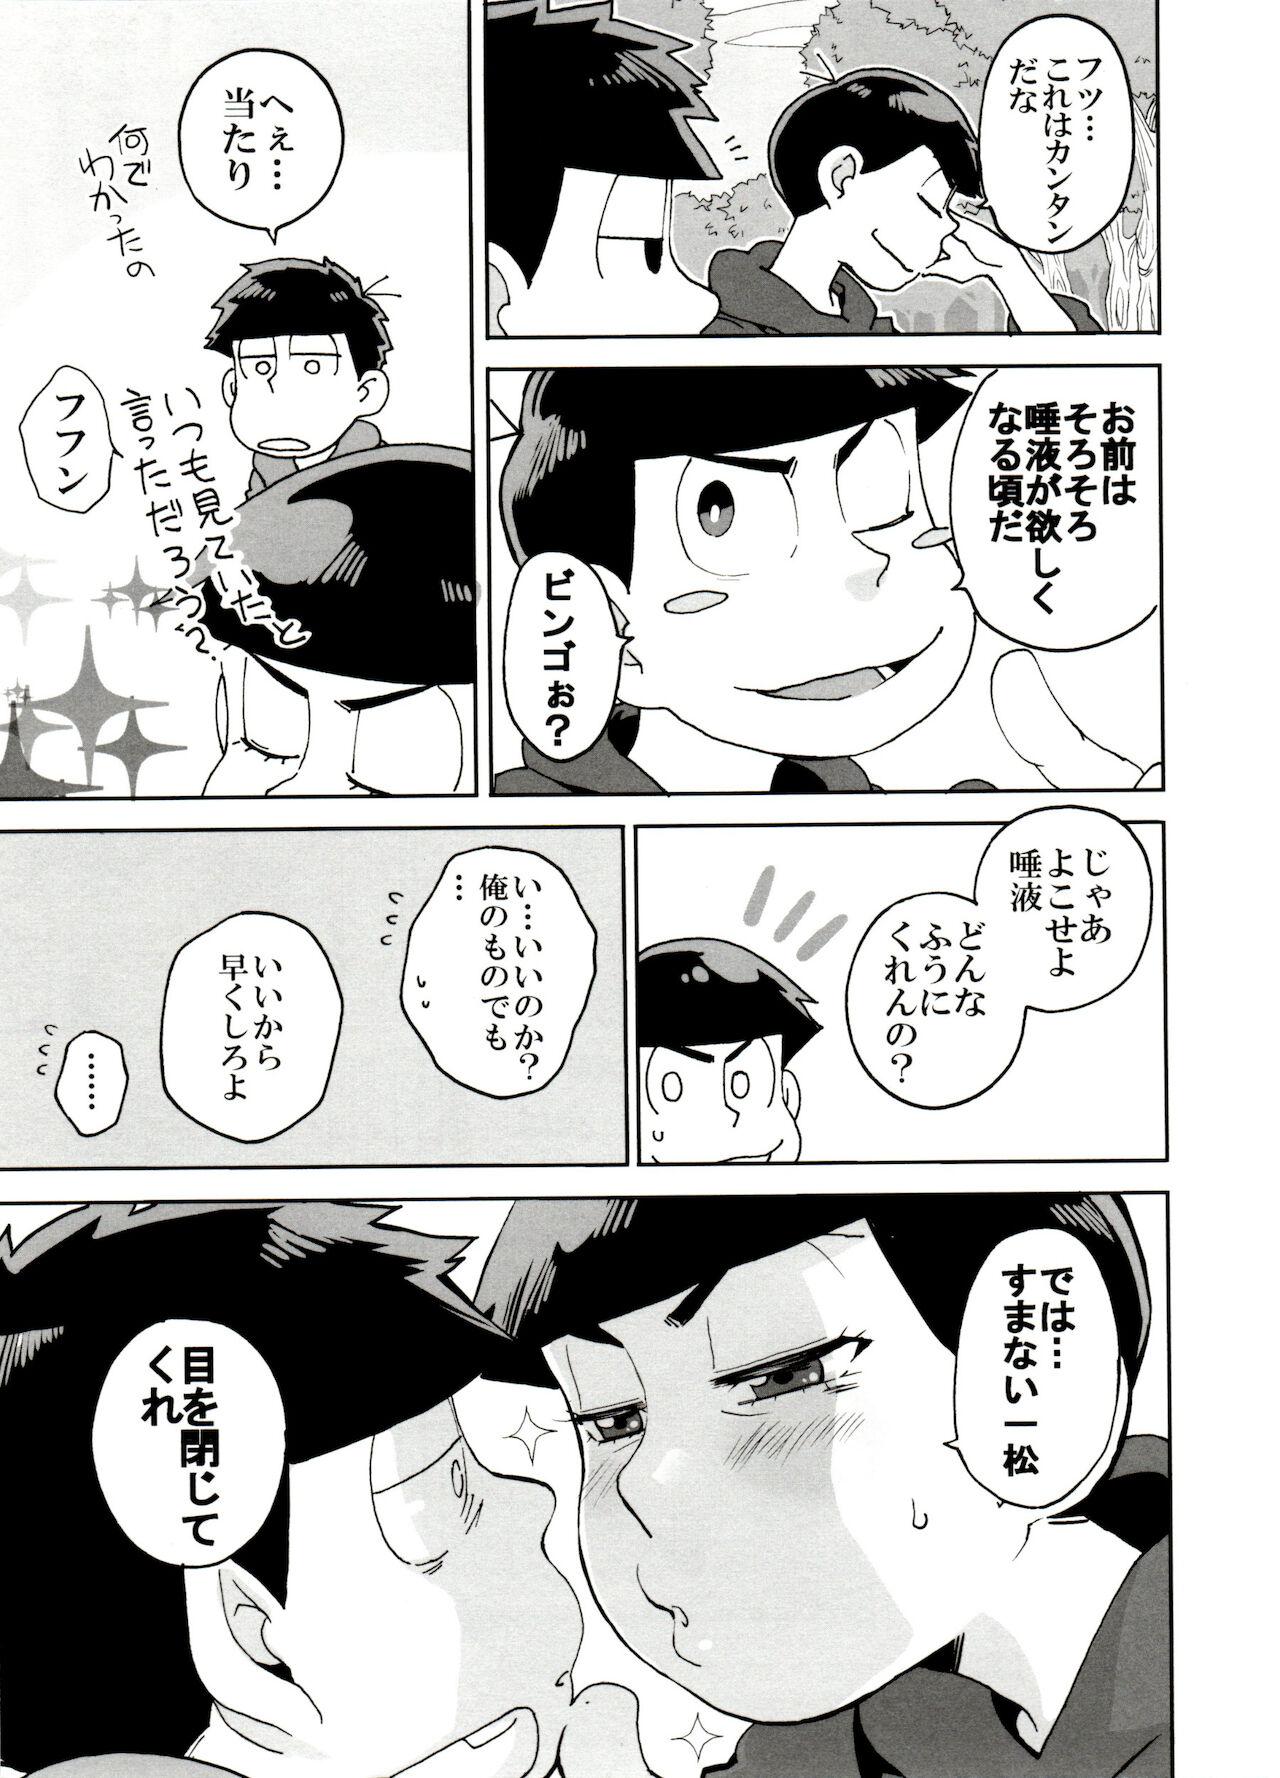 Skinny SM Matsu 2 - Osomatsu-san Relax - Page 9